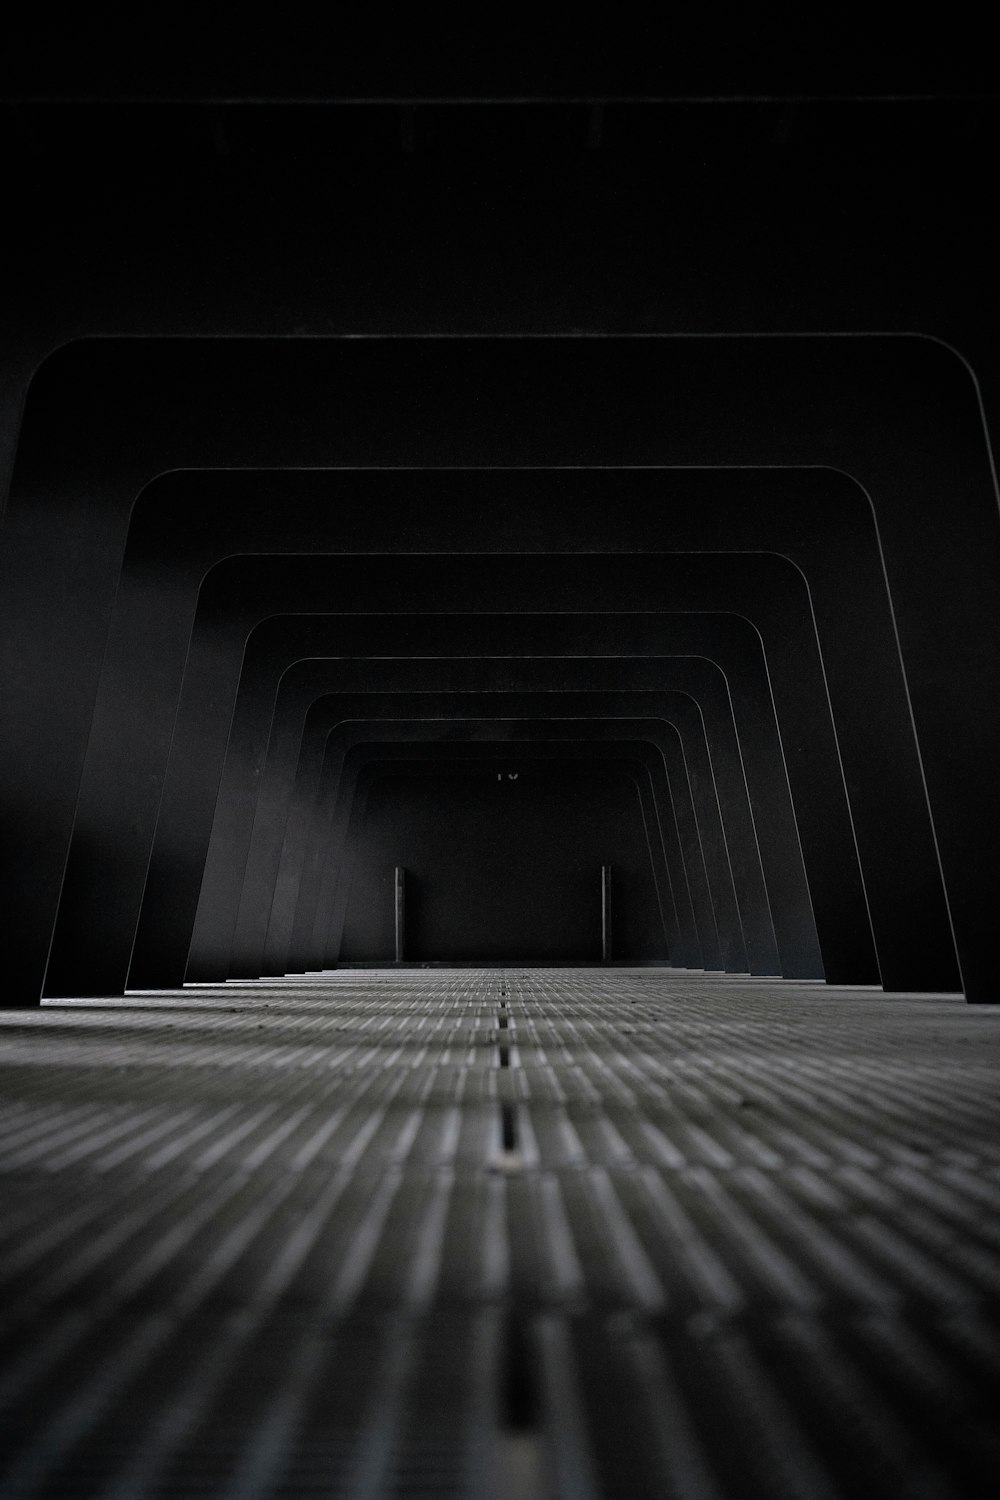 túnel preto e branco na fotografia em tons de cinza